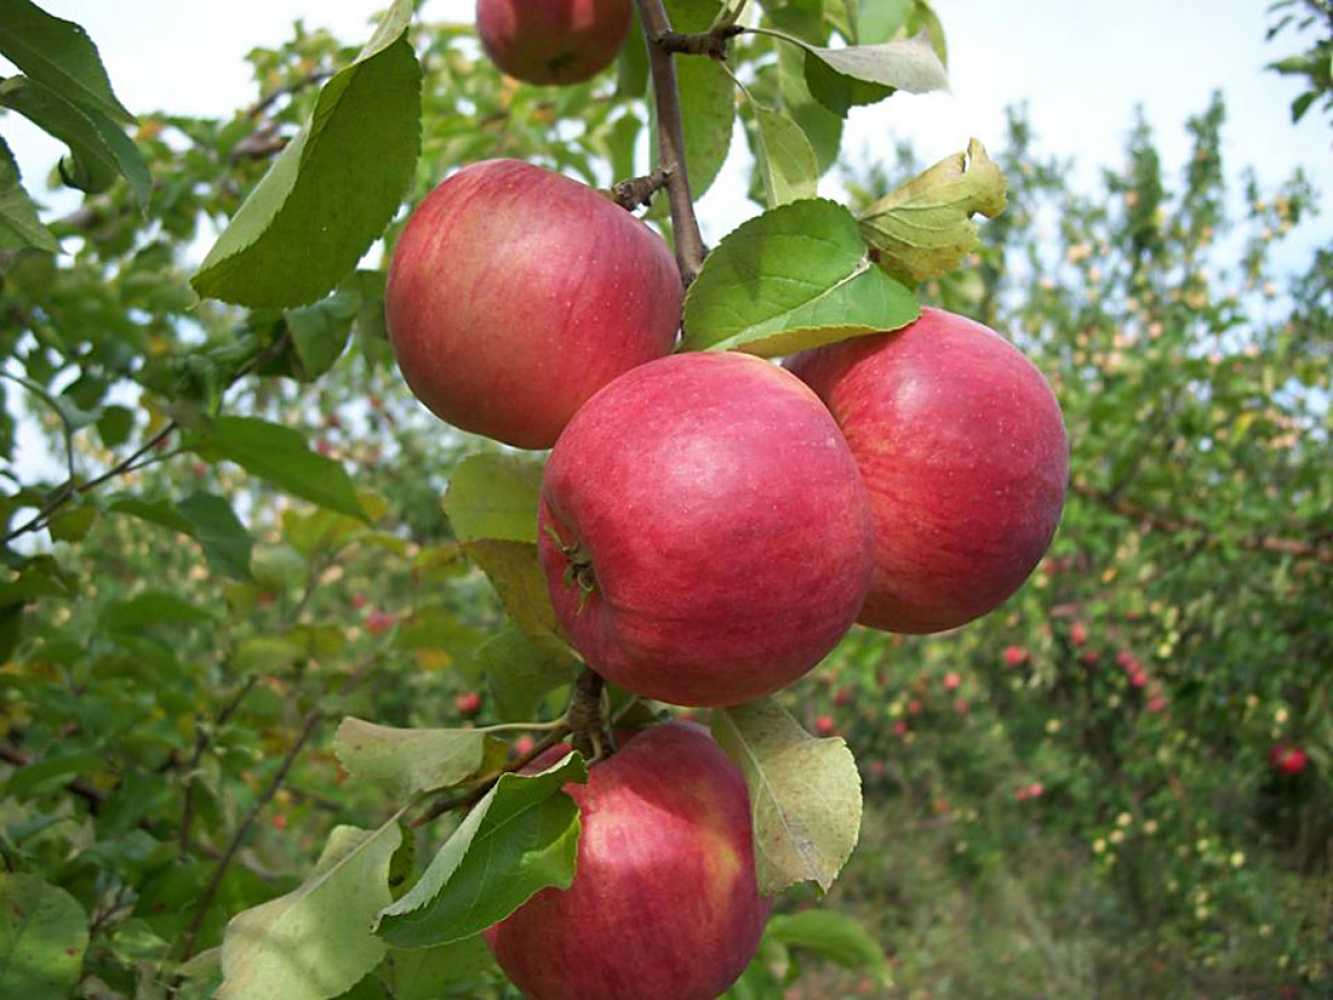 О яблоне юбиляр: описание сорта, характеристики, агротехника, выращивание